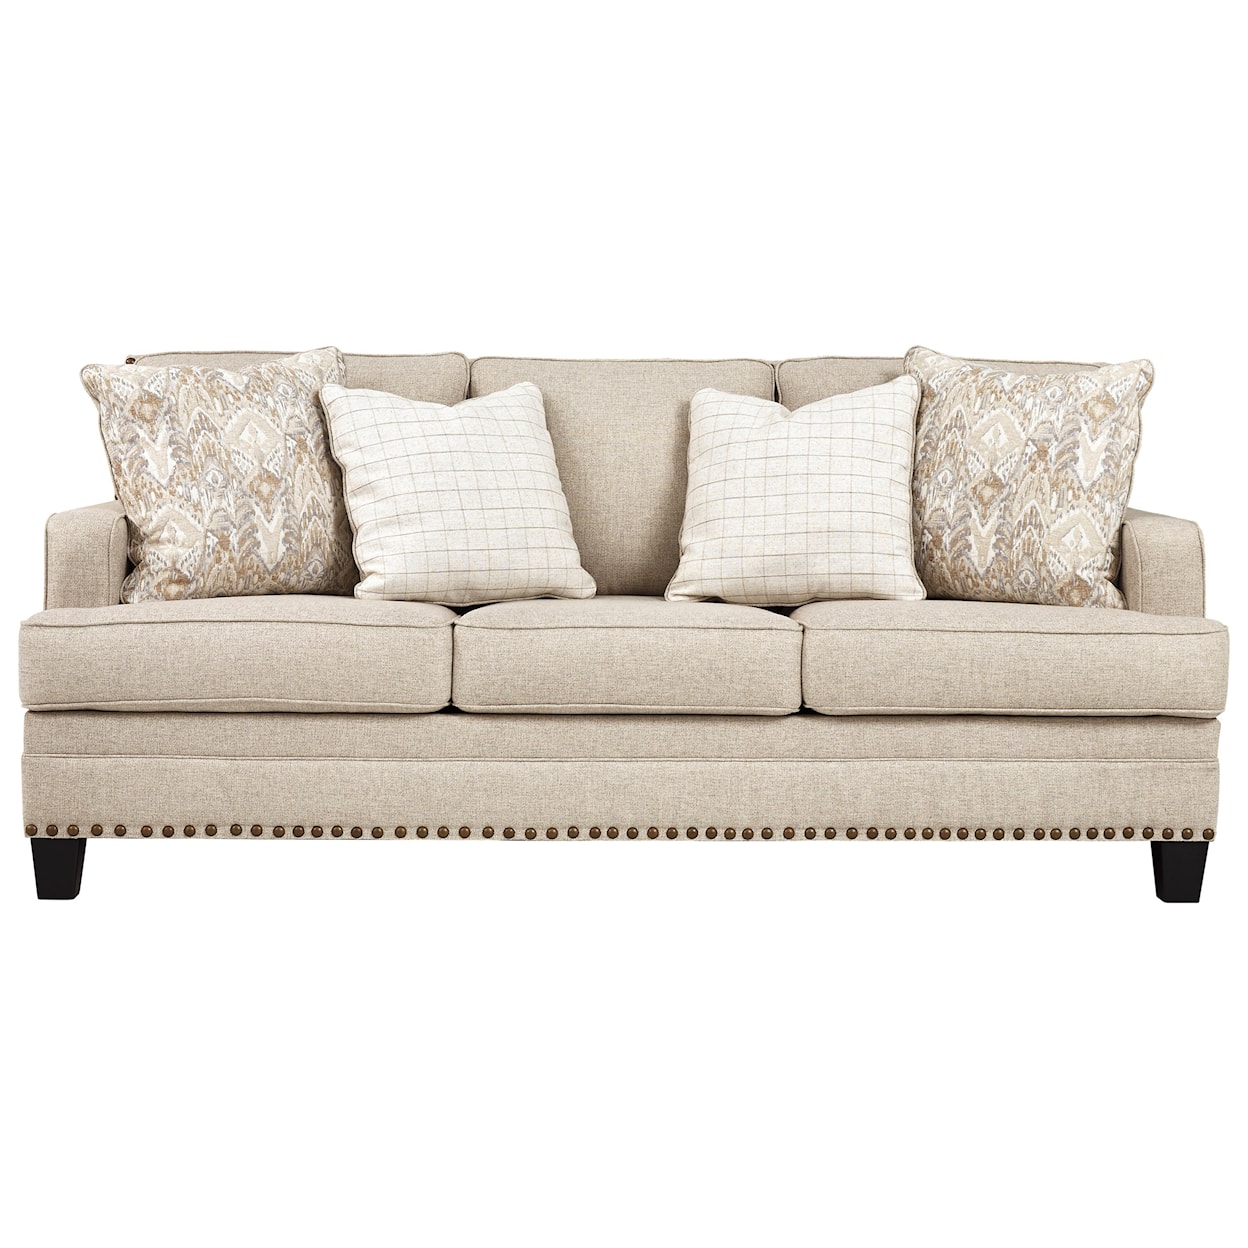 Benchcraft Claredon Sofa